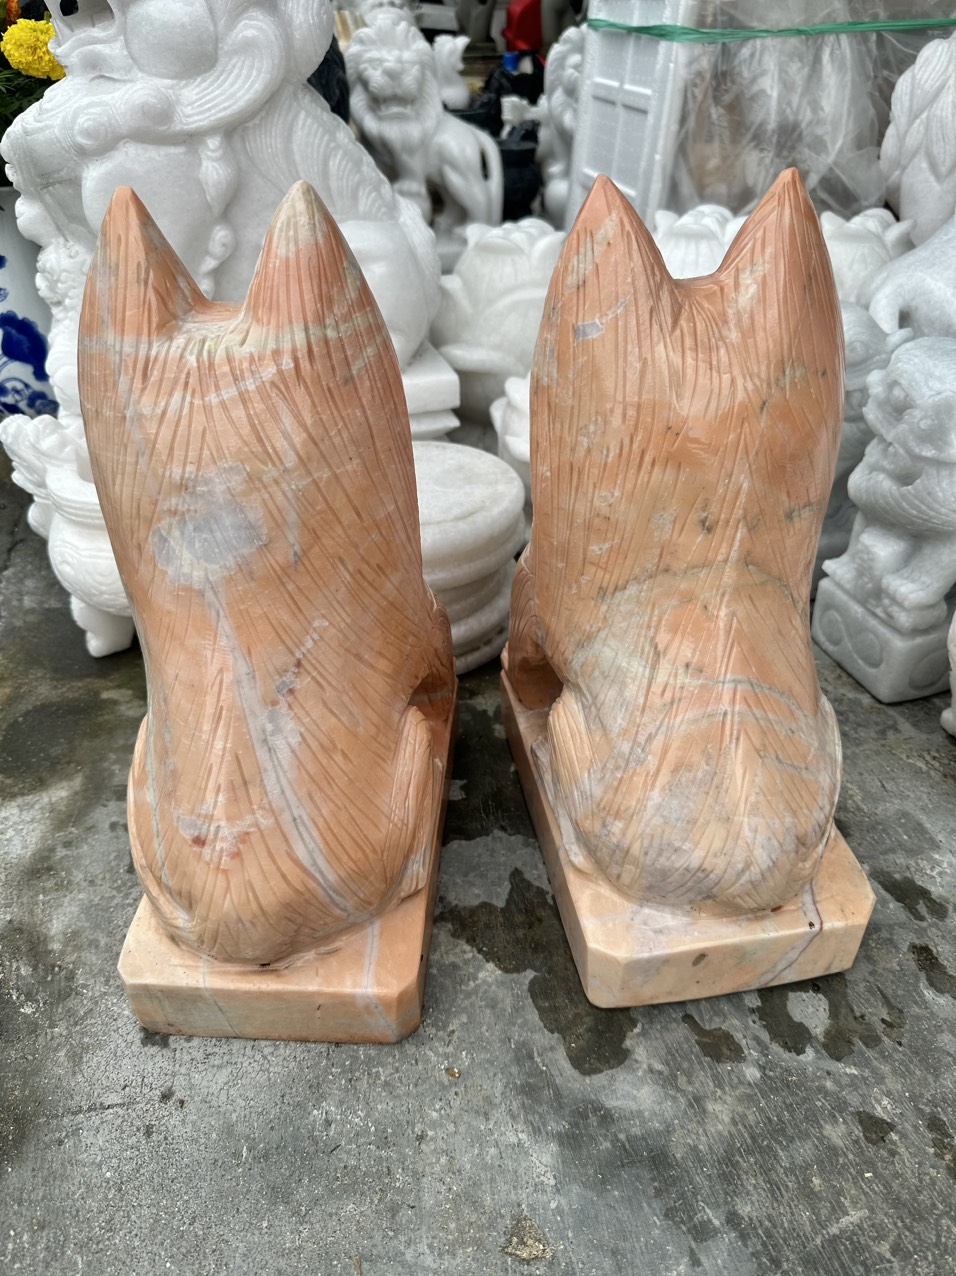 Cặp tượng chó đá phong thủy gác cổng đá cẩm thạch vàng cà rốt - Cao 40 cm